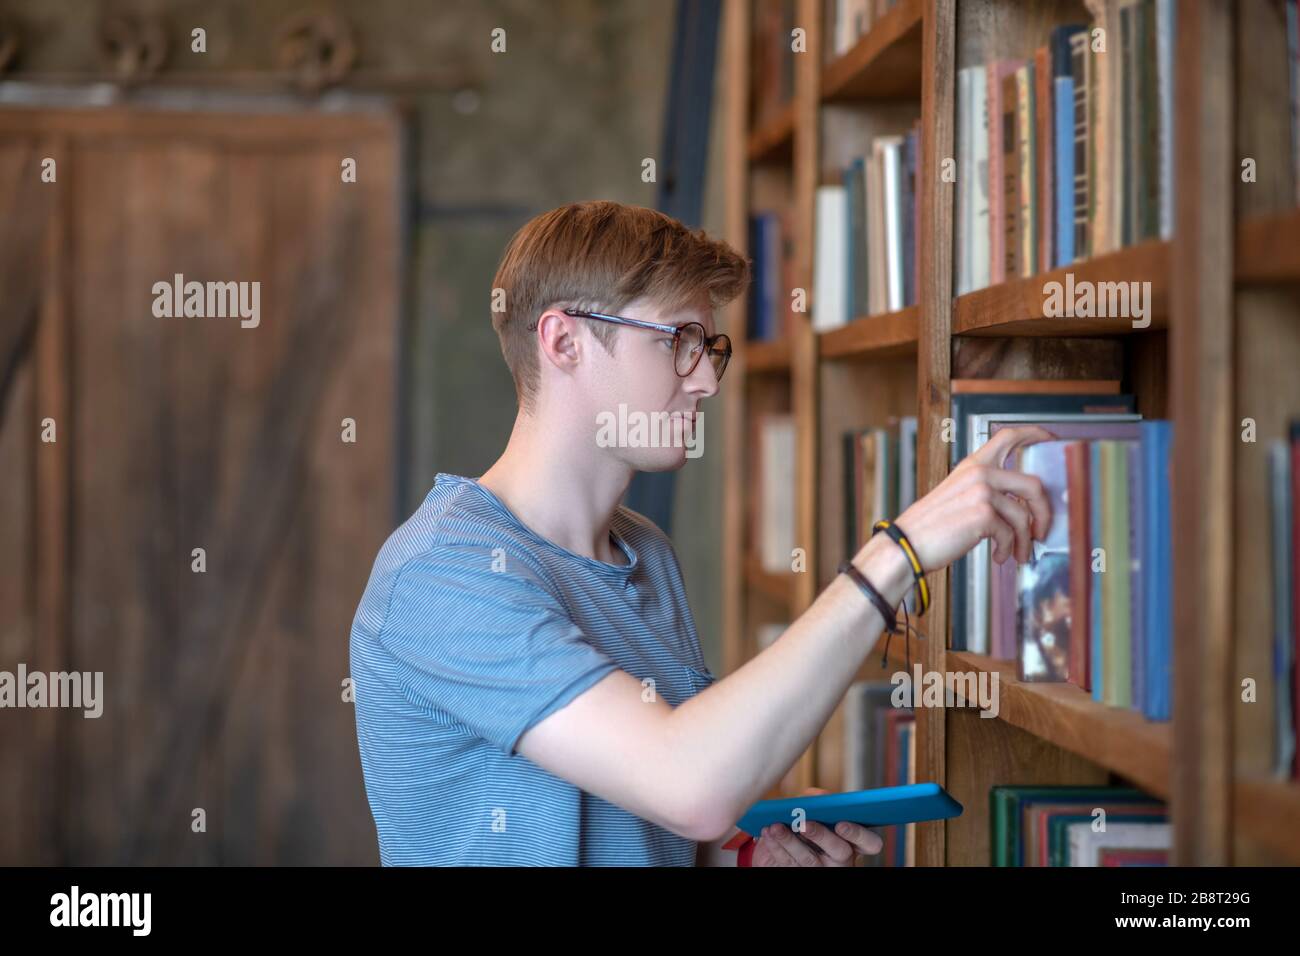 Jeune homme dans des lunettes prenant un livre d'une étagère de livre Banque D'Images